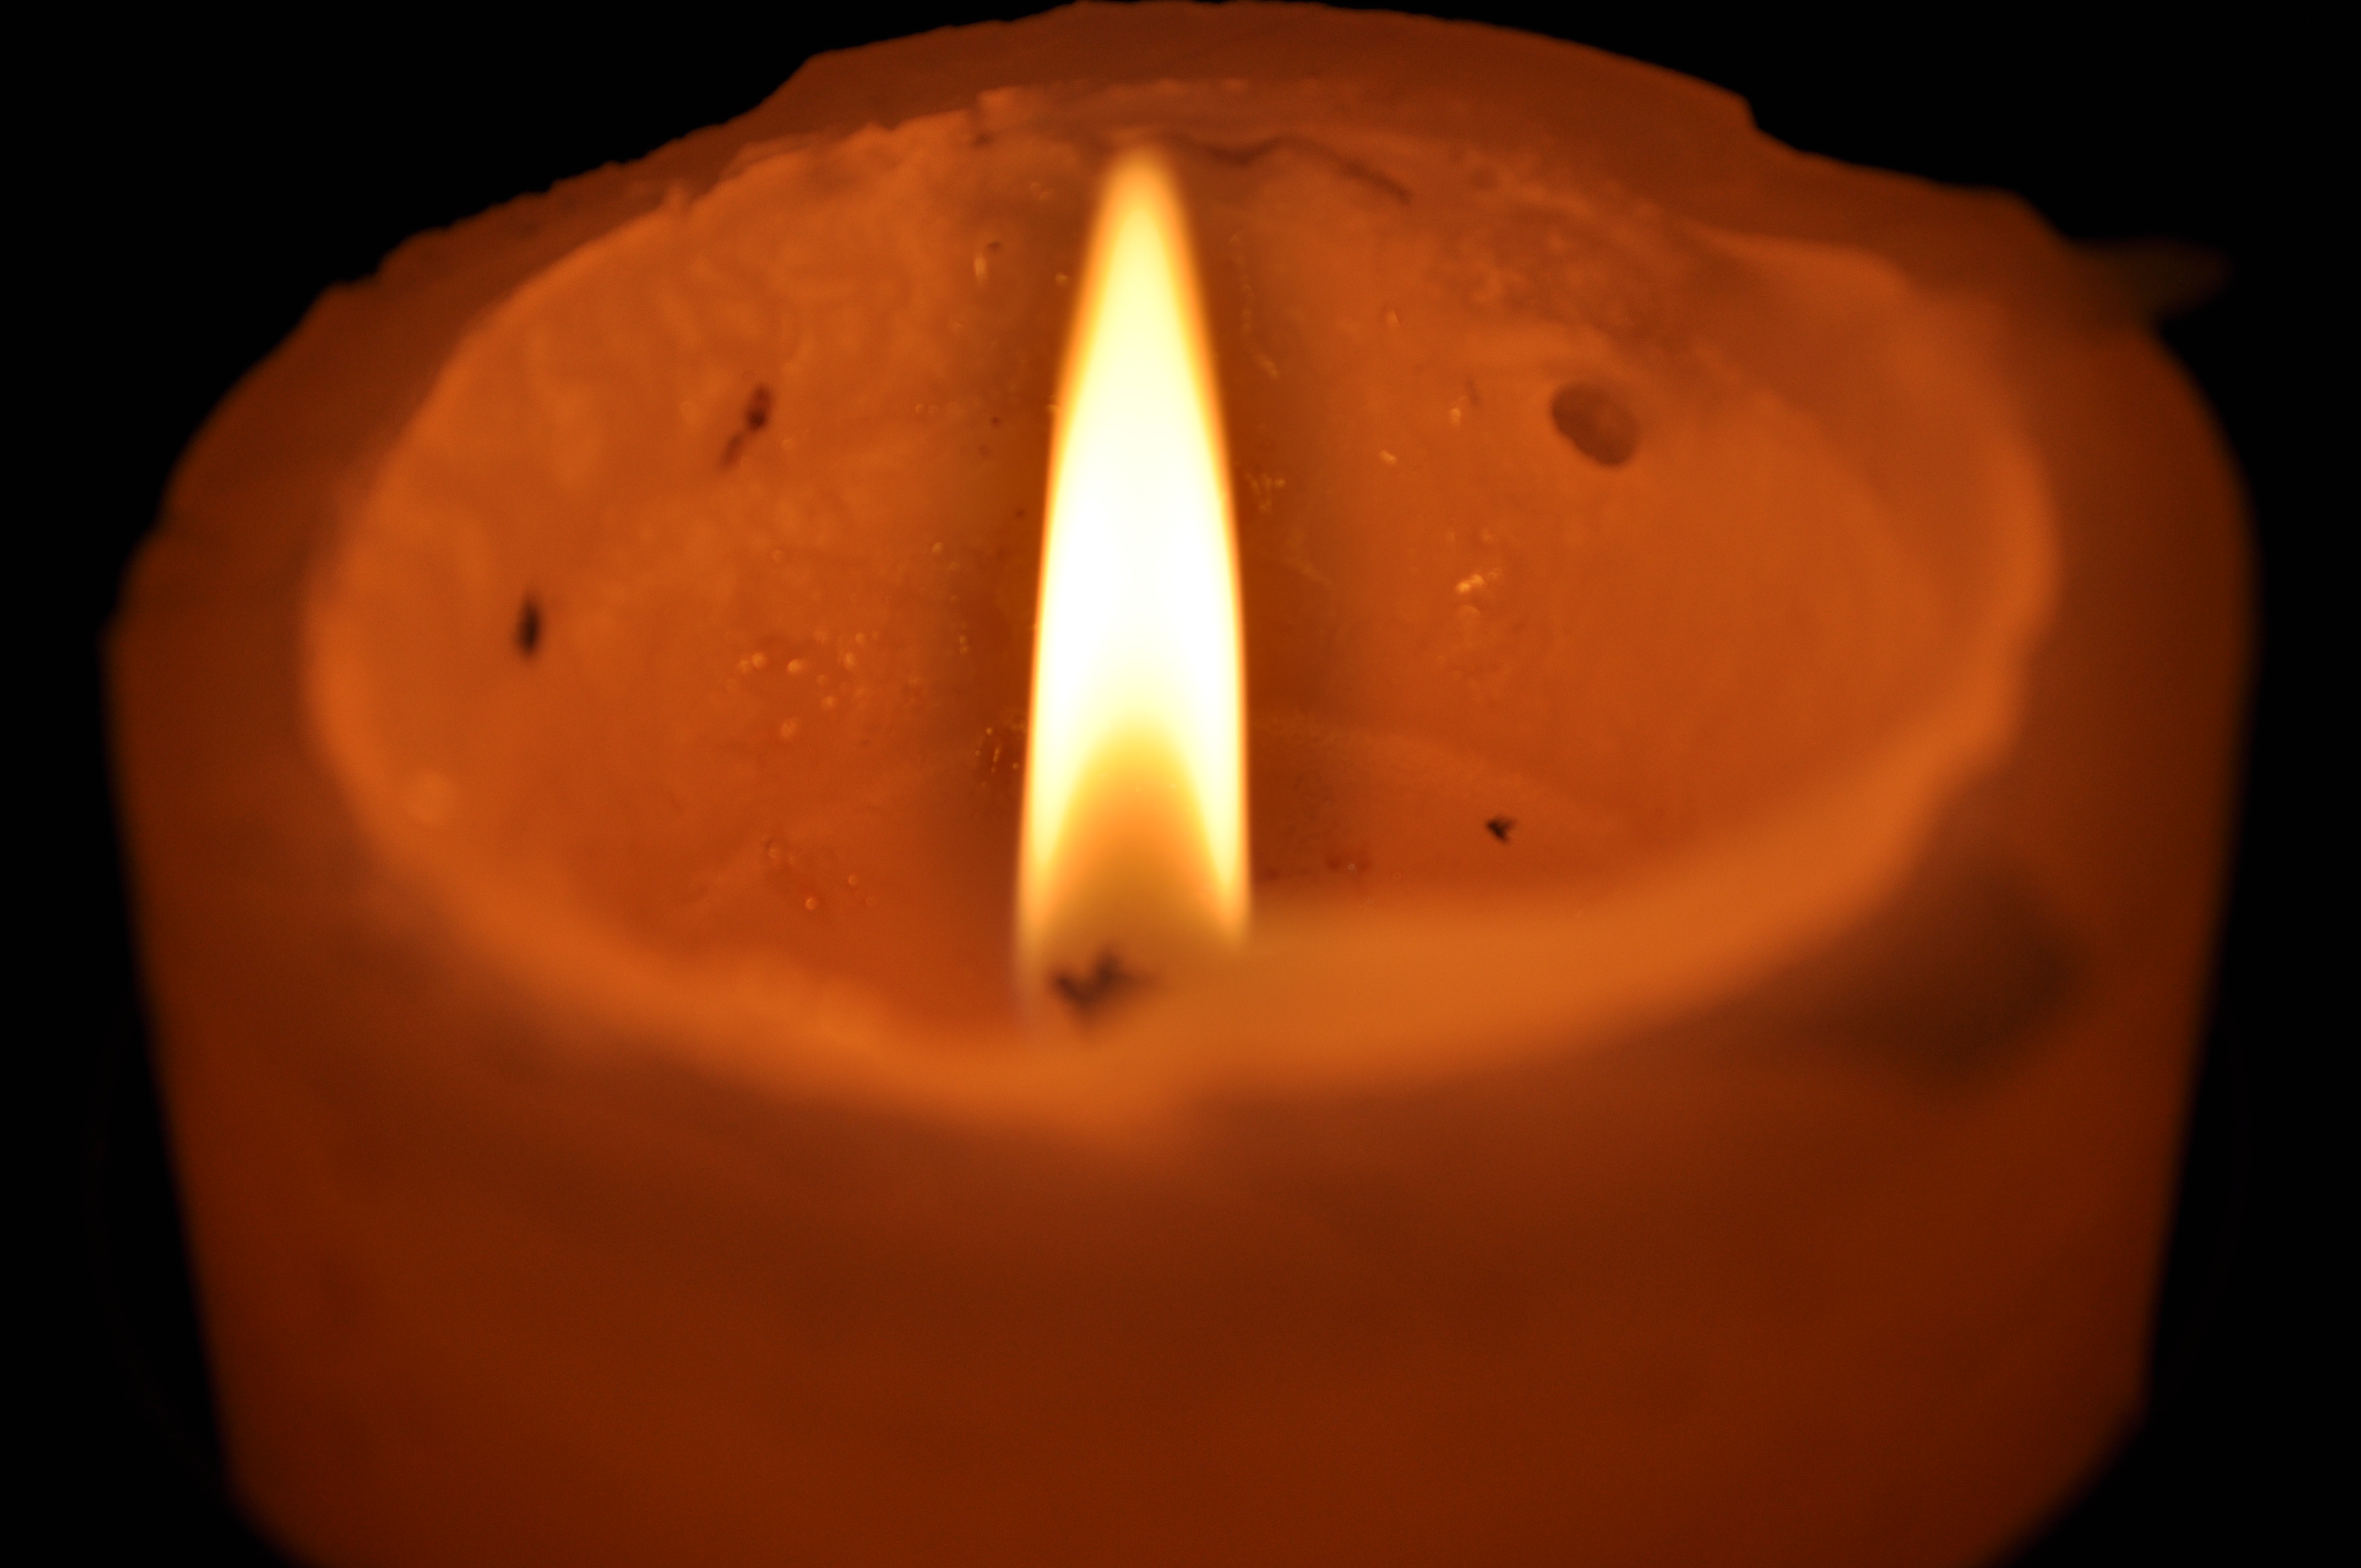 Candlelight photo